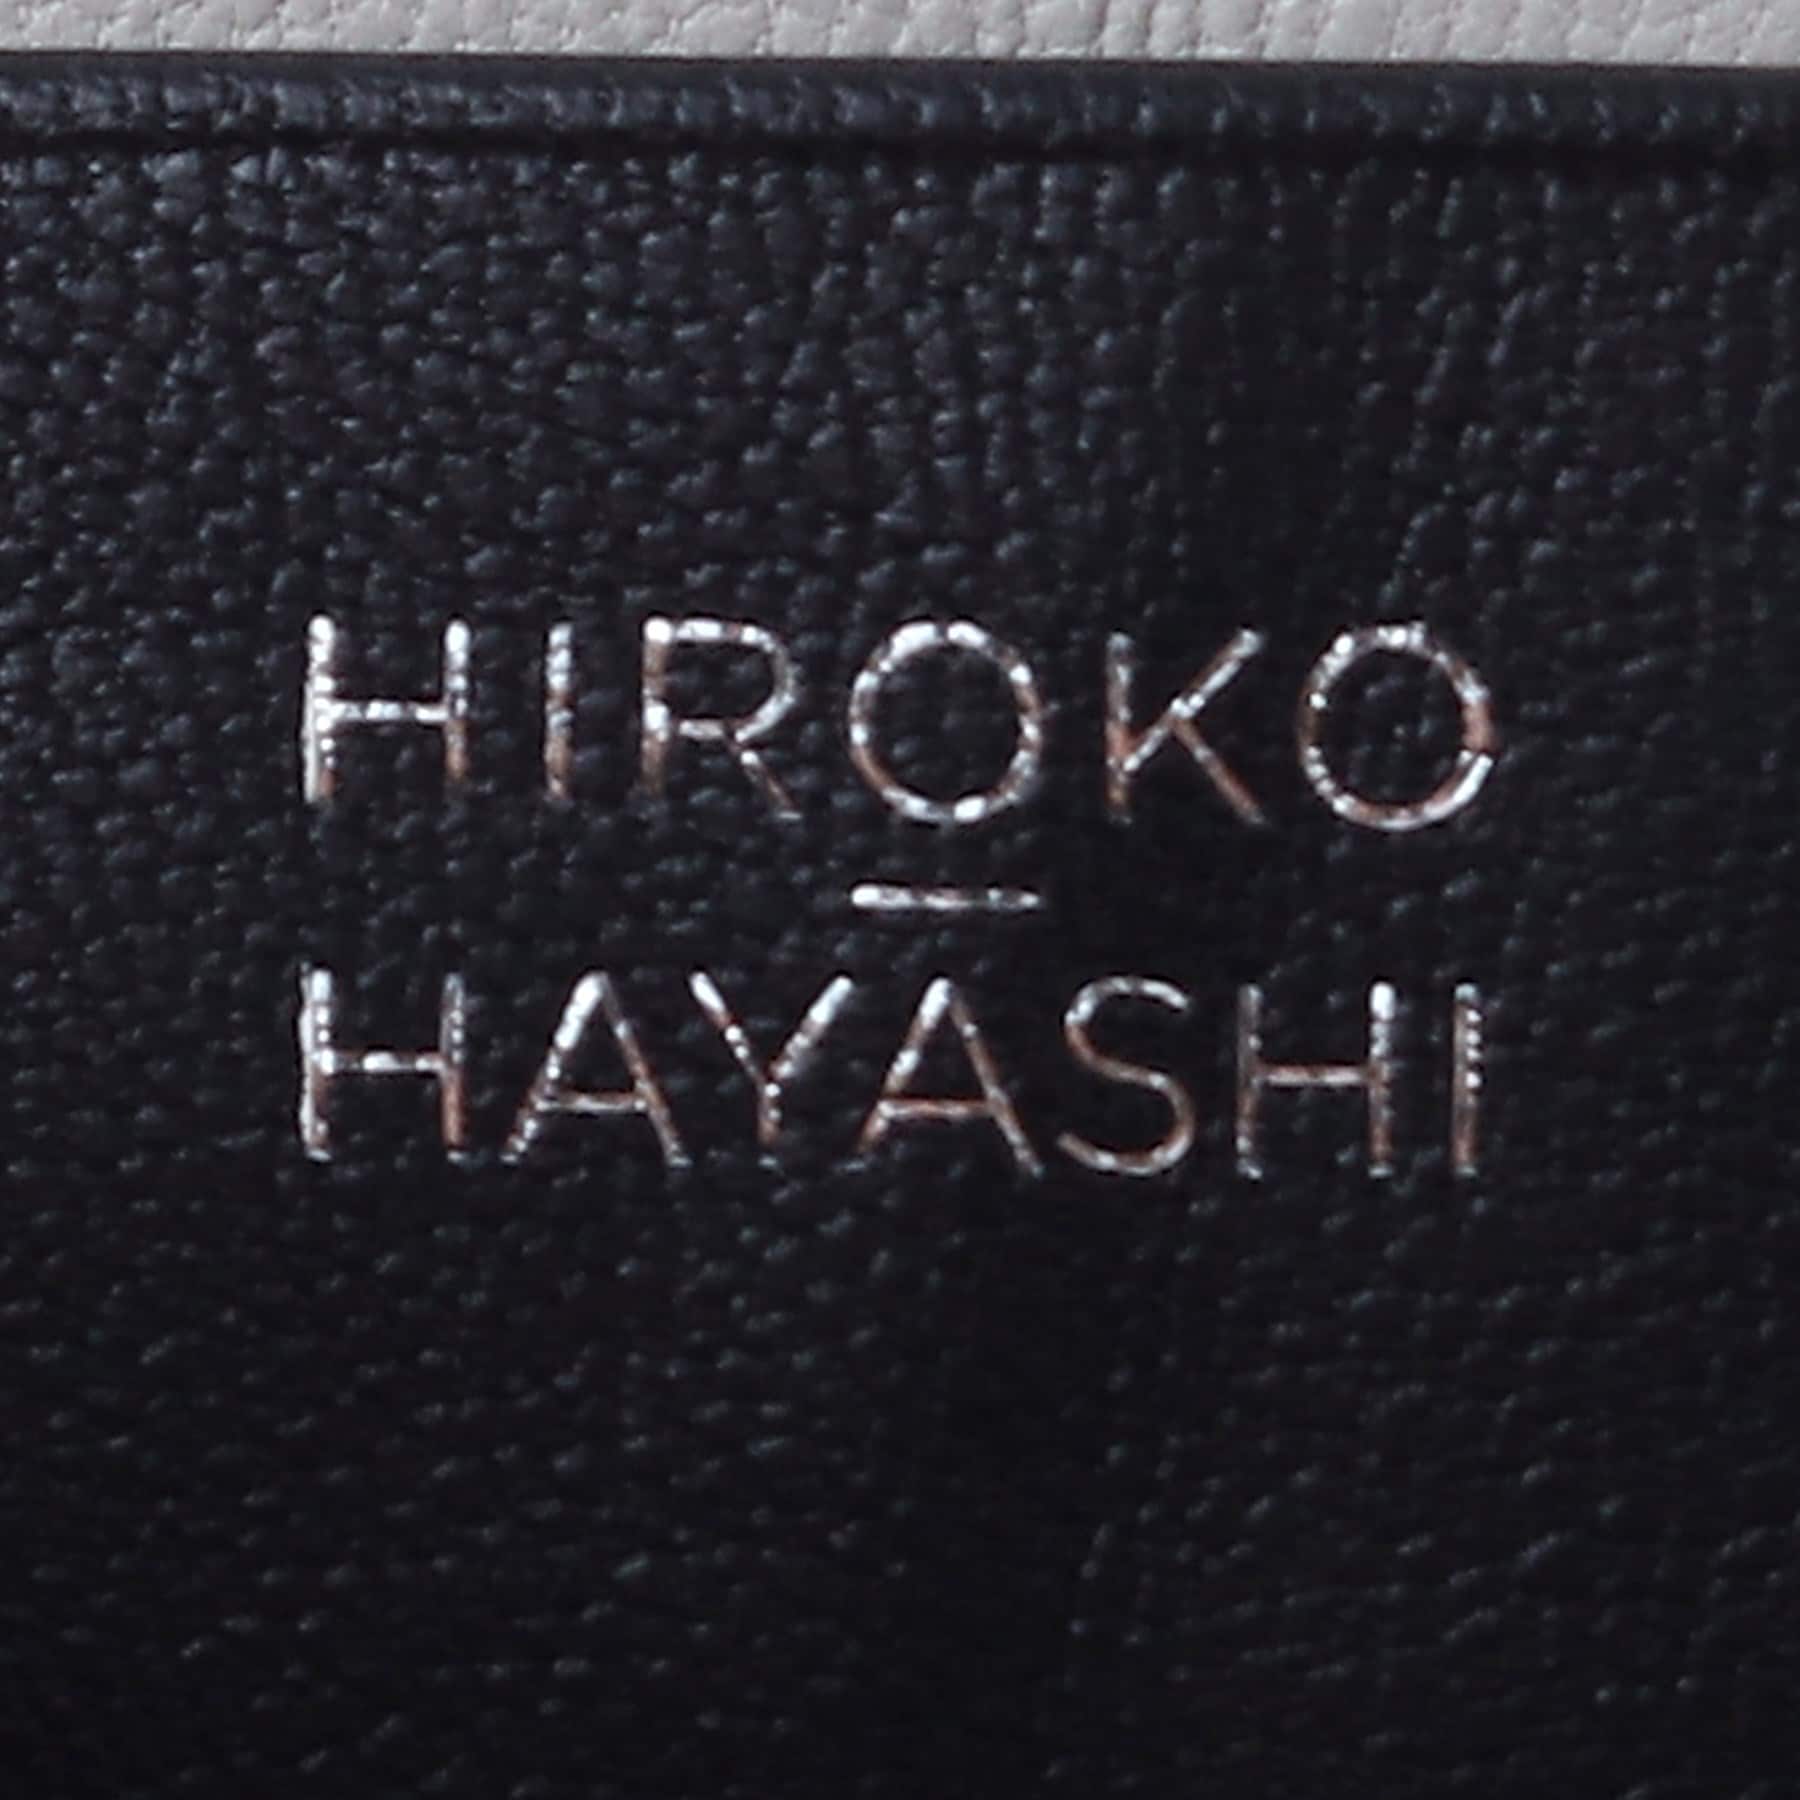 BEFANA(ベファーナ)マルチ財布|HIROKO HAYASHI(ヒロコ ハヤシ)の通販